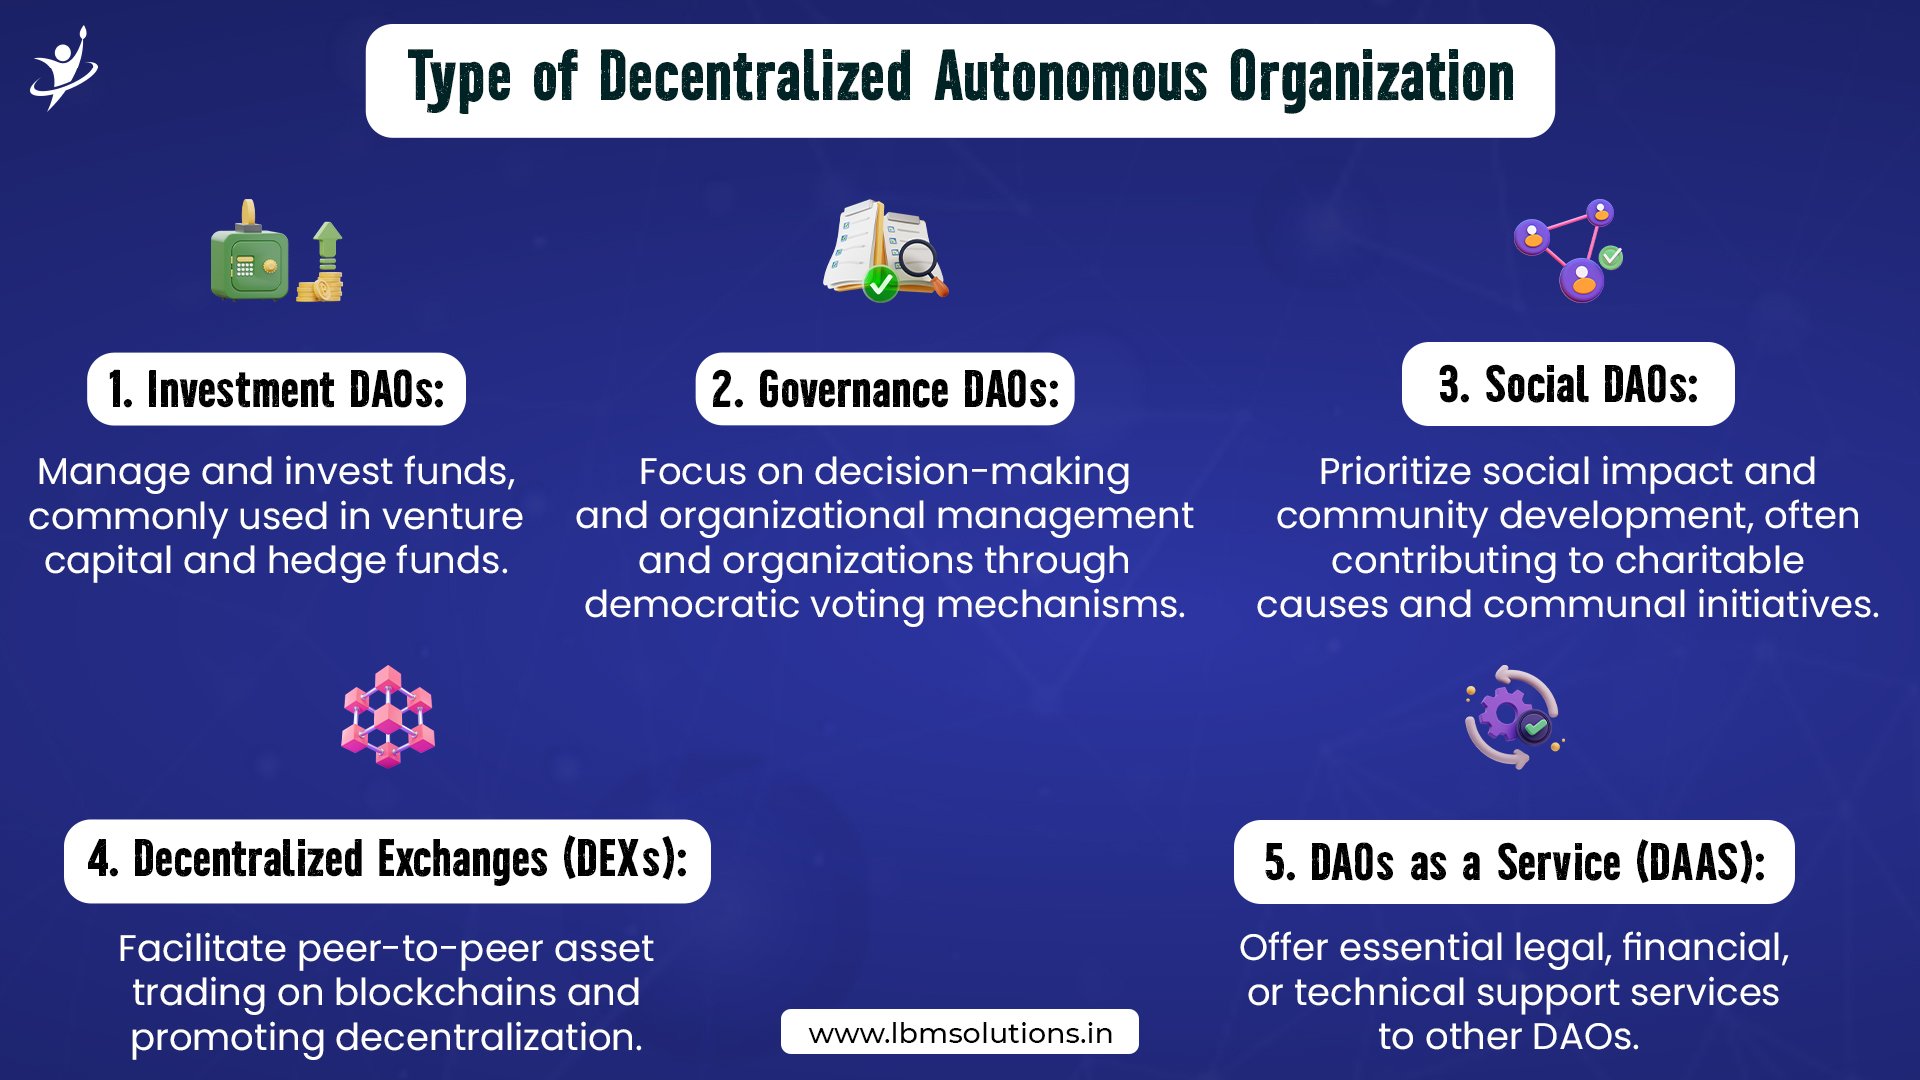 Decentralized autonomous organization